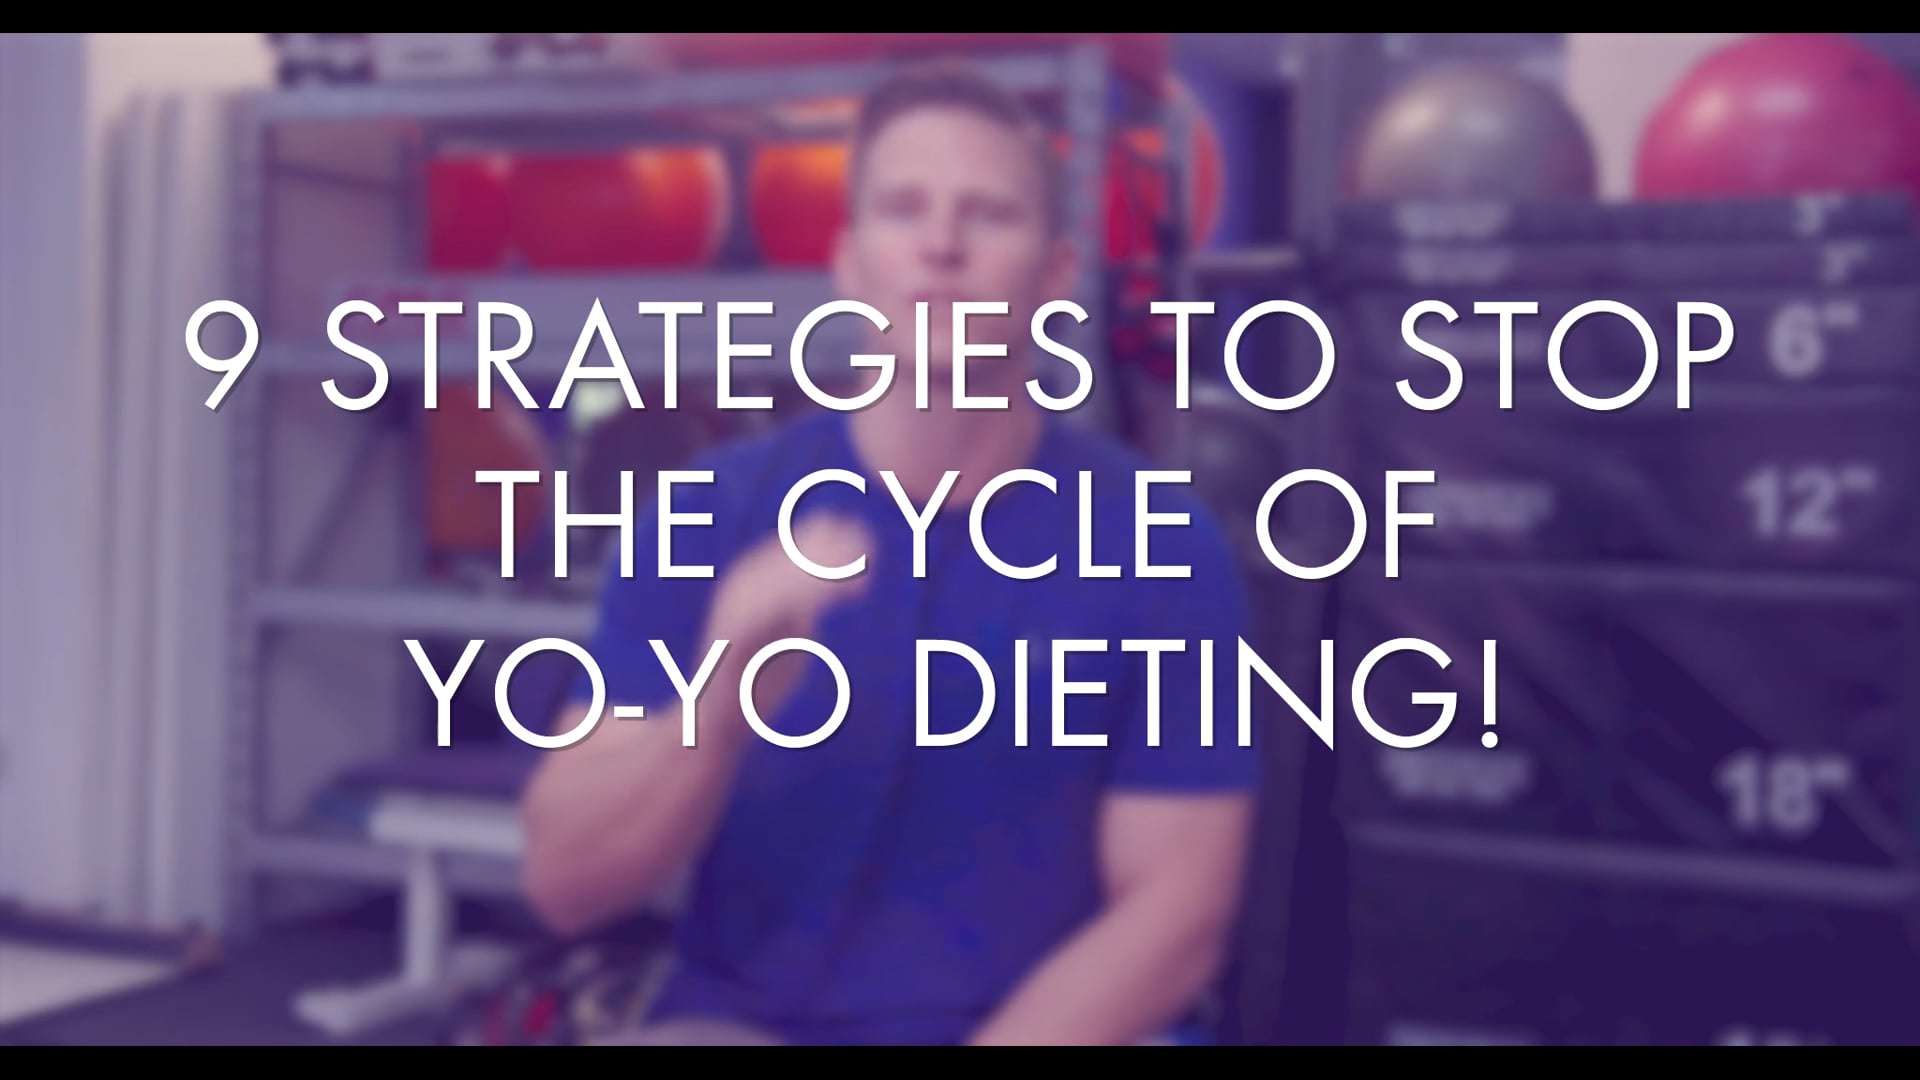 9 Tips to Break the Yo-Yo Dieting